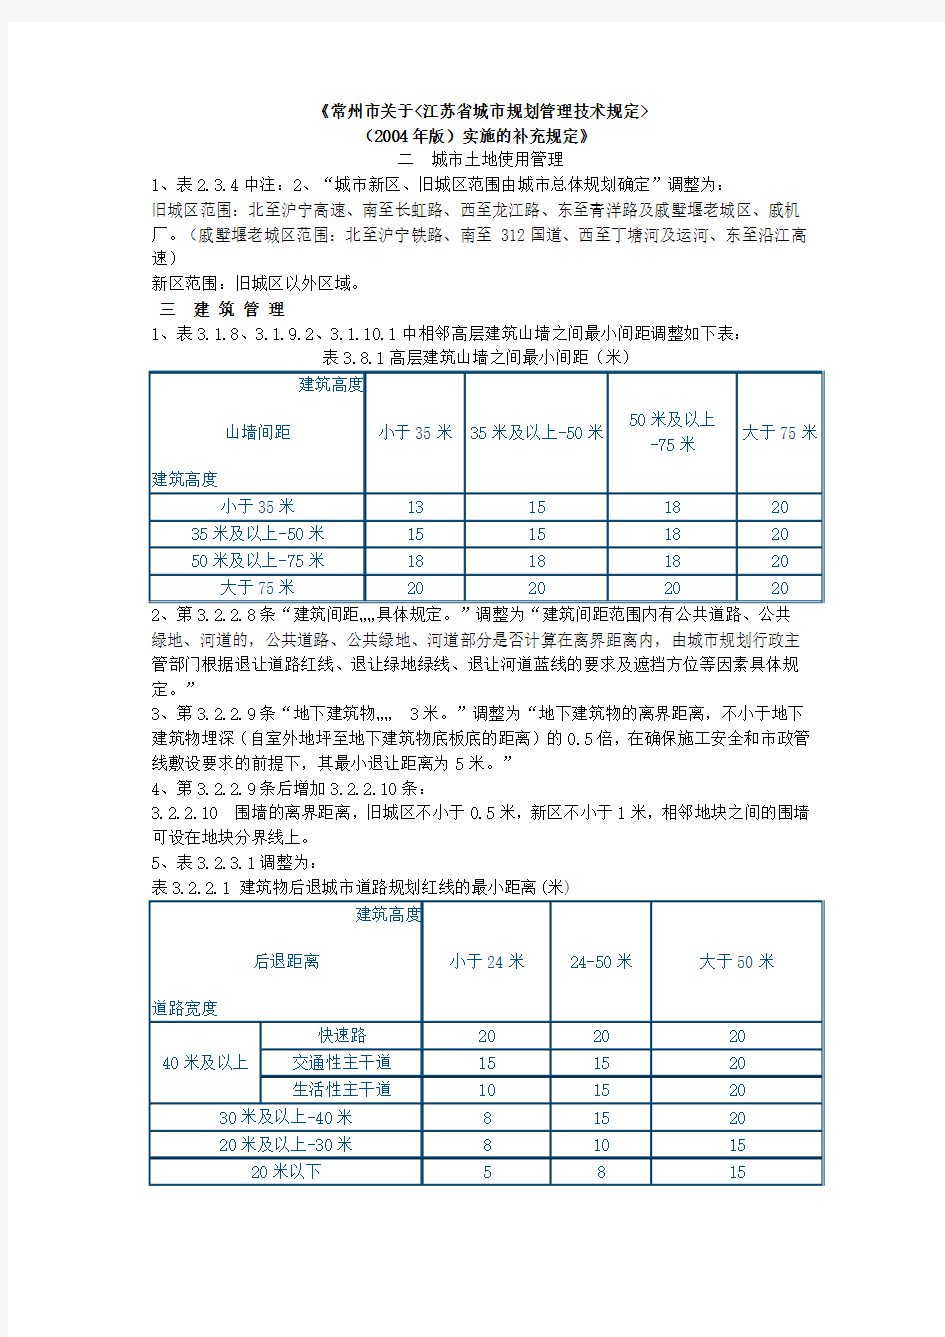 常州市关于《江苏省城市规划管理技术规定》(2004年版)实施的补充规定